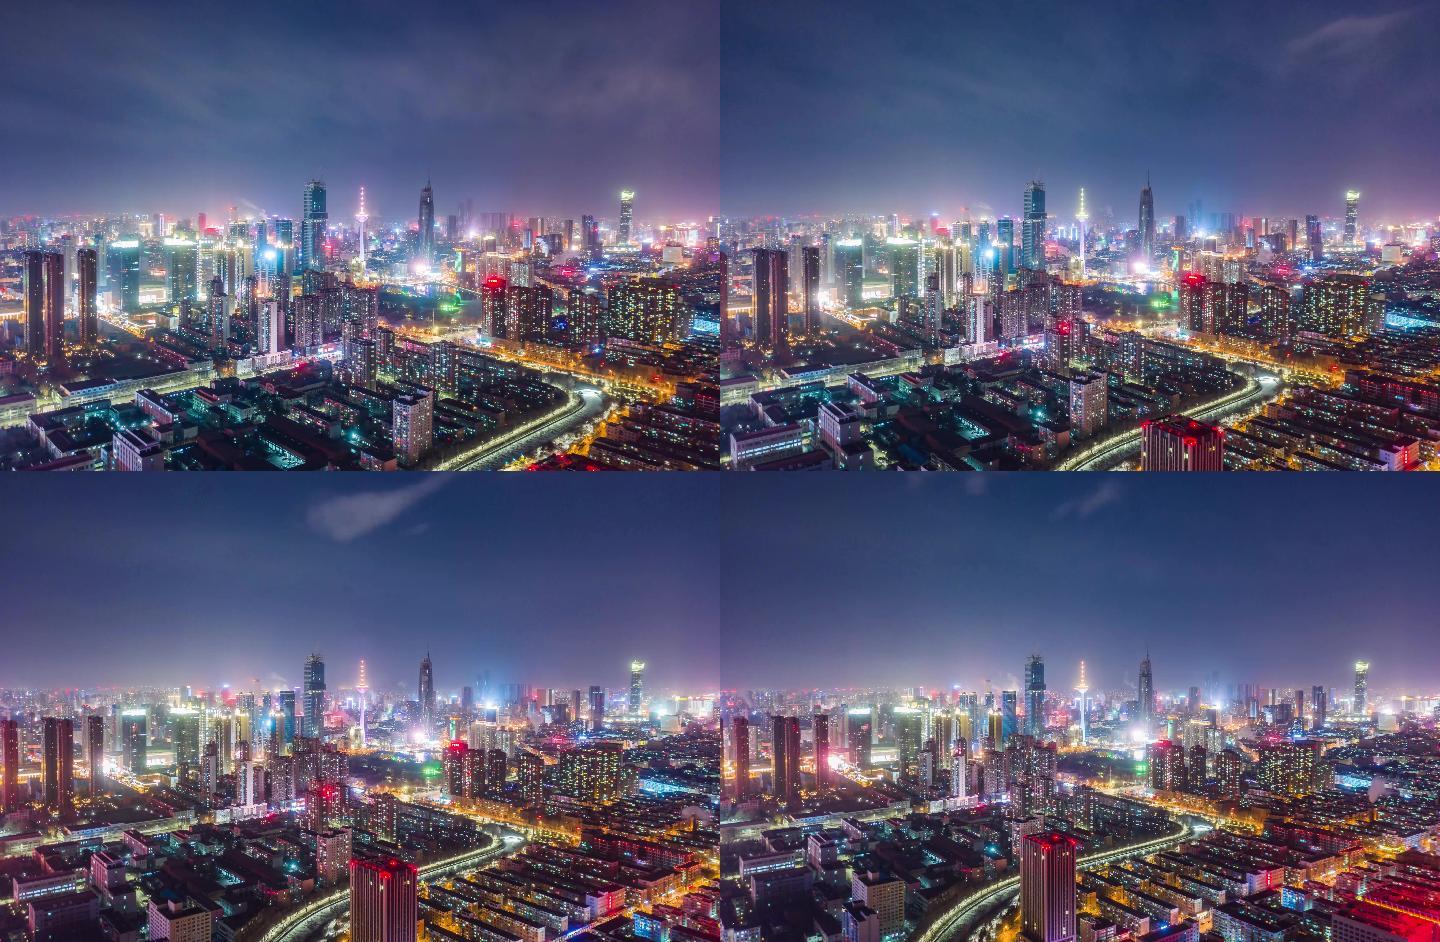 【高清4k】沈阳青年大街超美城市夜景